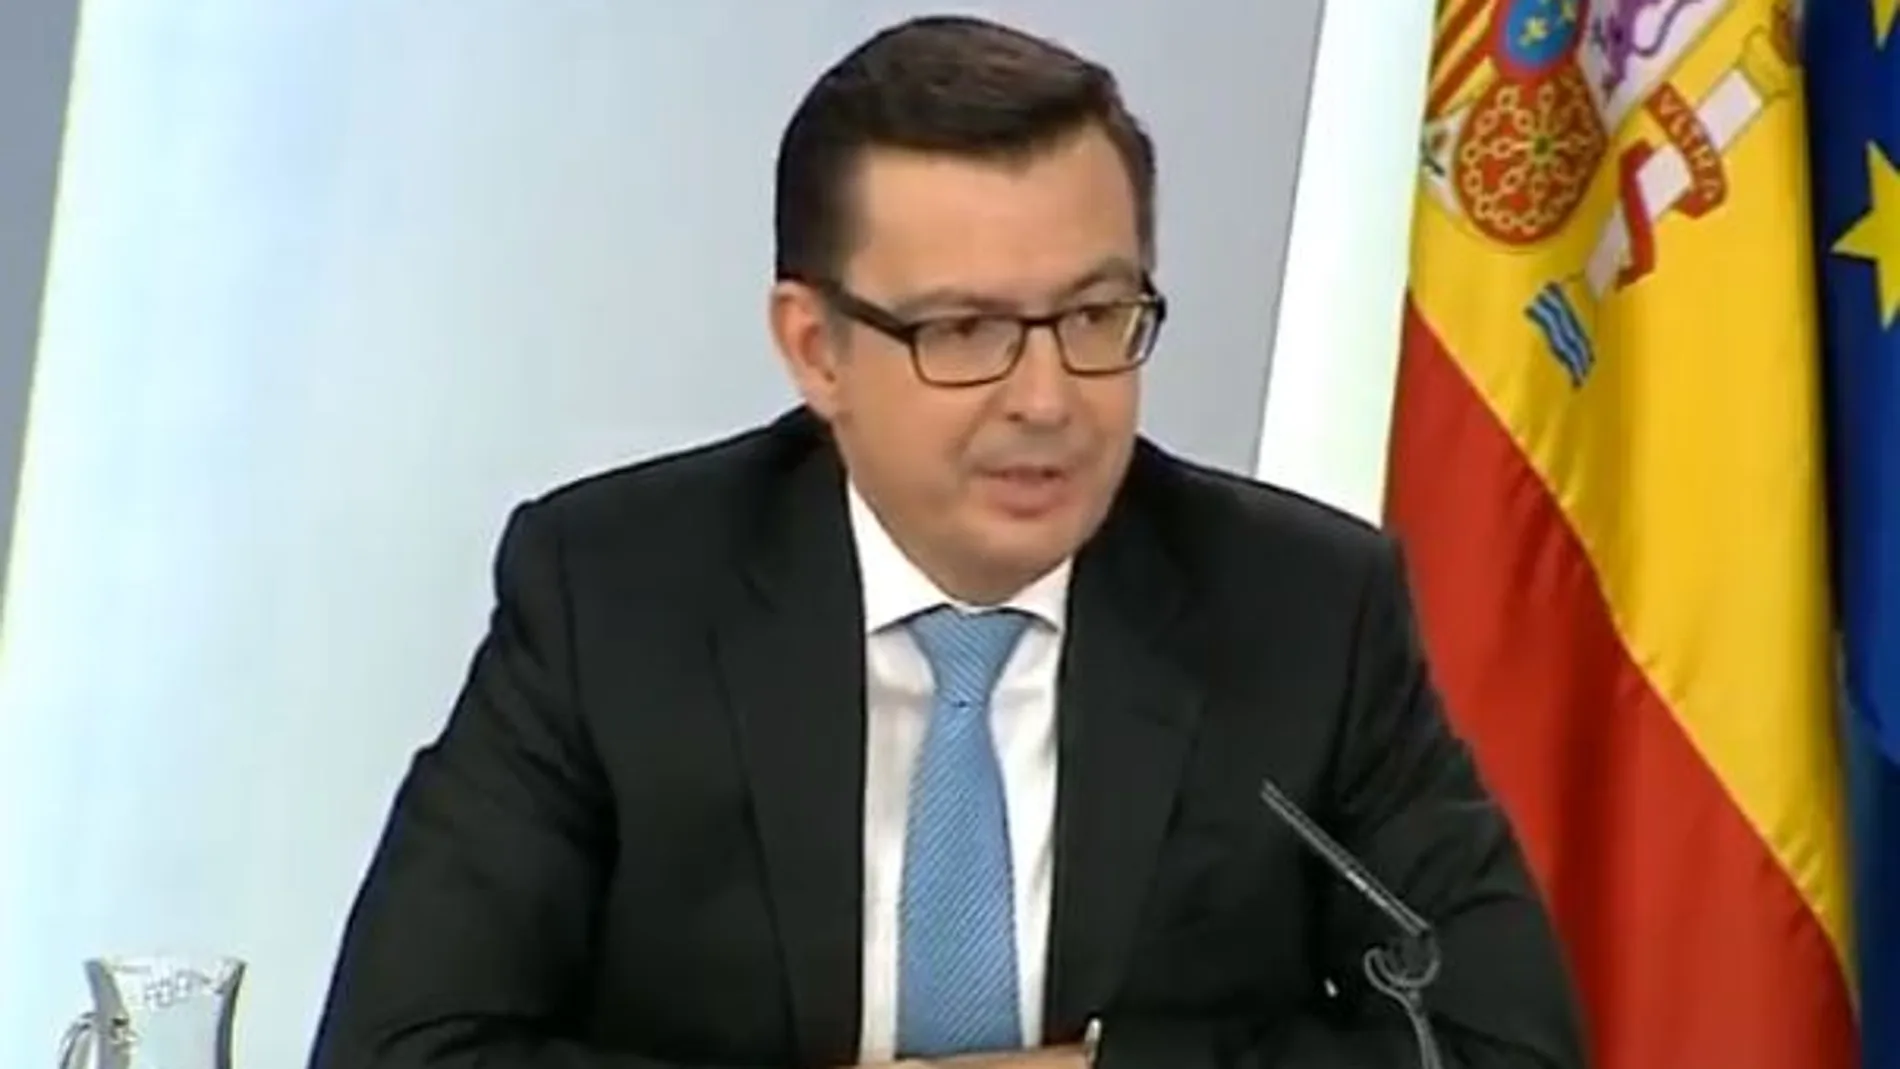 El ministro de Economía, Industria y Competitividad, Román Escolano, en la rueda de prensa posterior al Consejo de Ministros